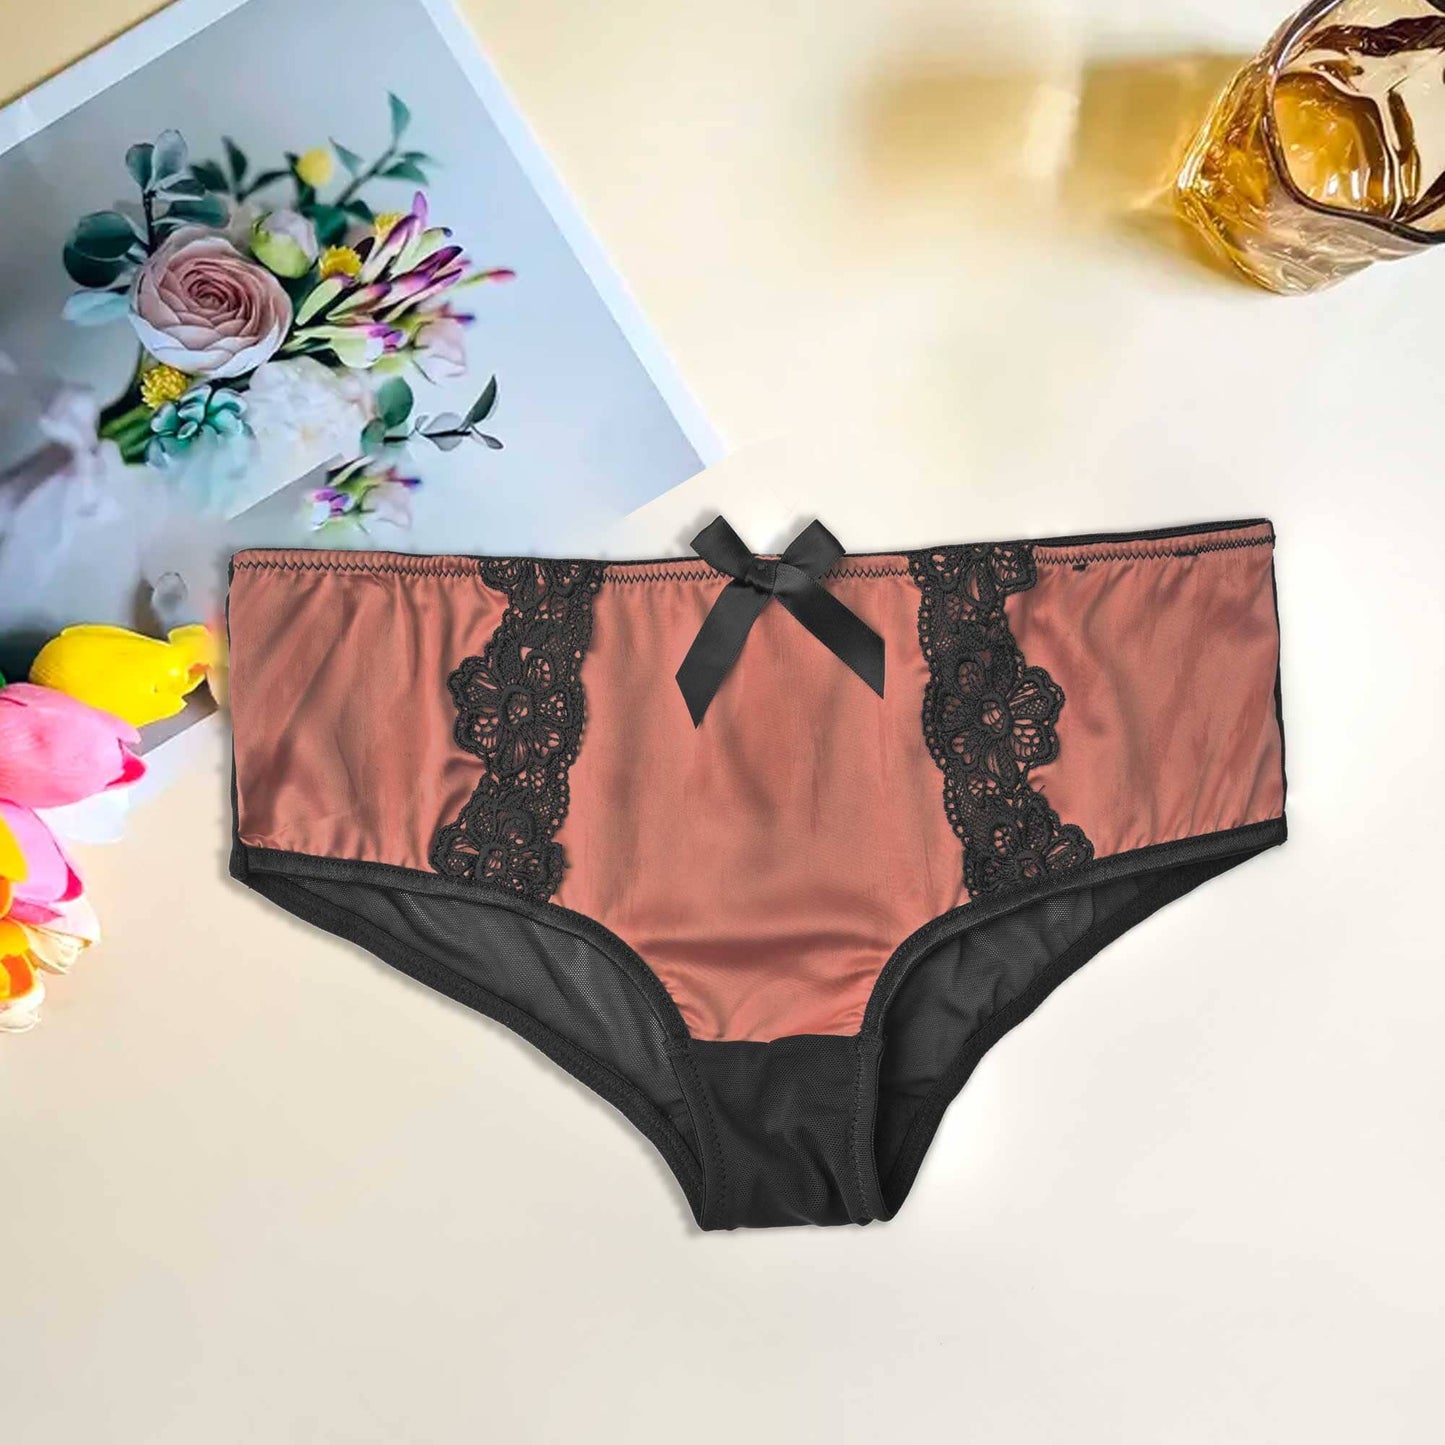 Mpz Women's Fancy Lace Design Silk Underwear Women's Lingerie RAM Brick M 